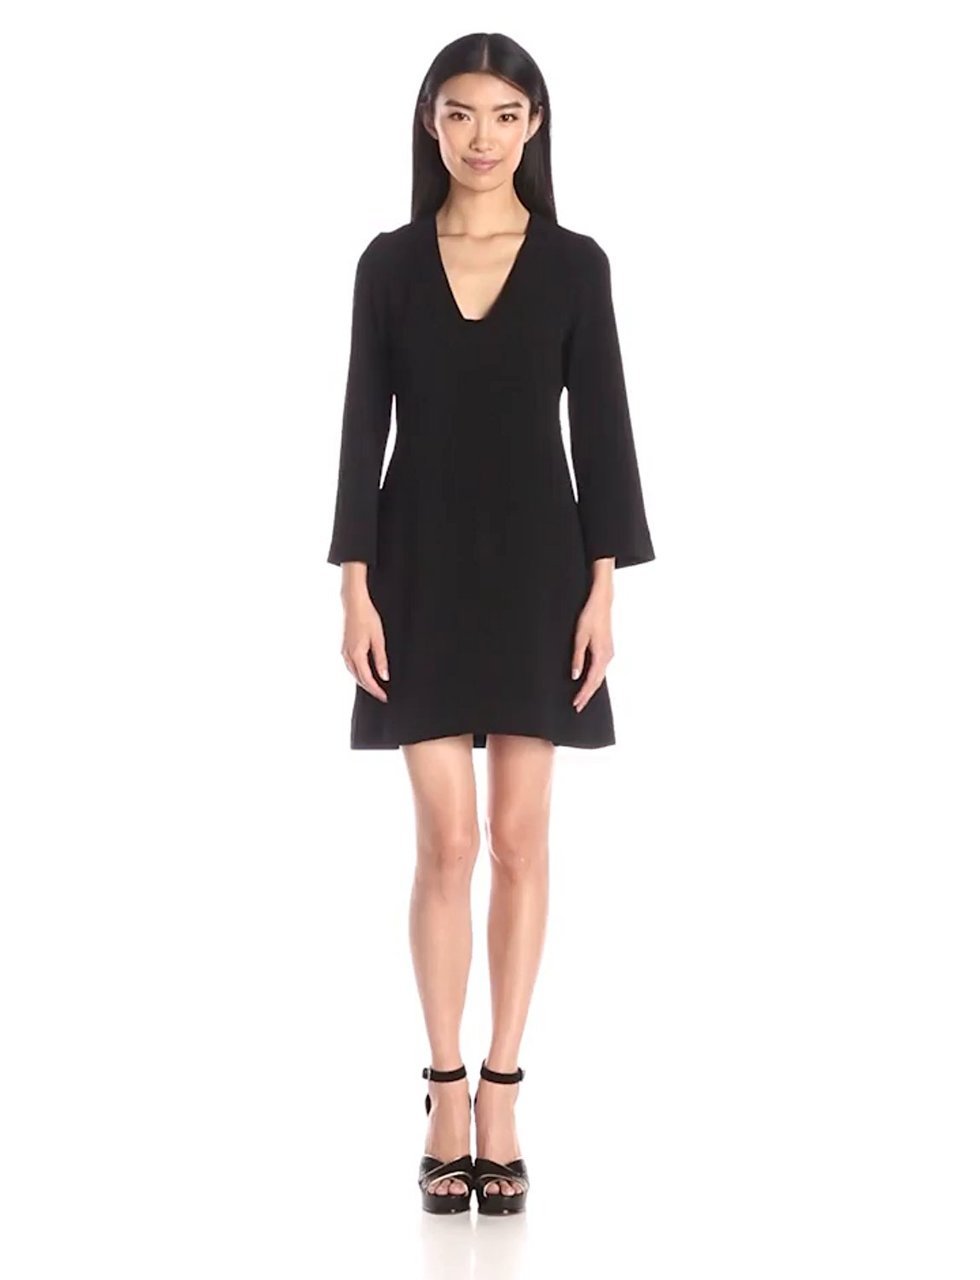 Taylor - Bell Sleeves V-Neck Short Crepe Dress 7038M in Black